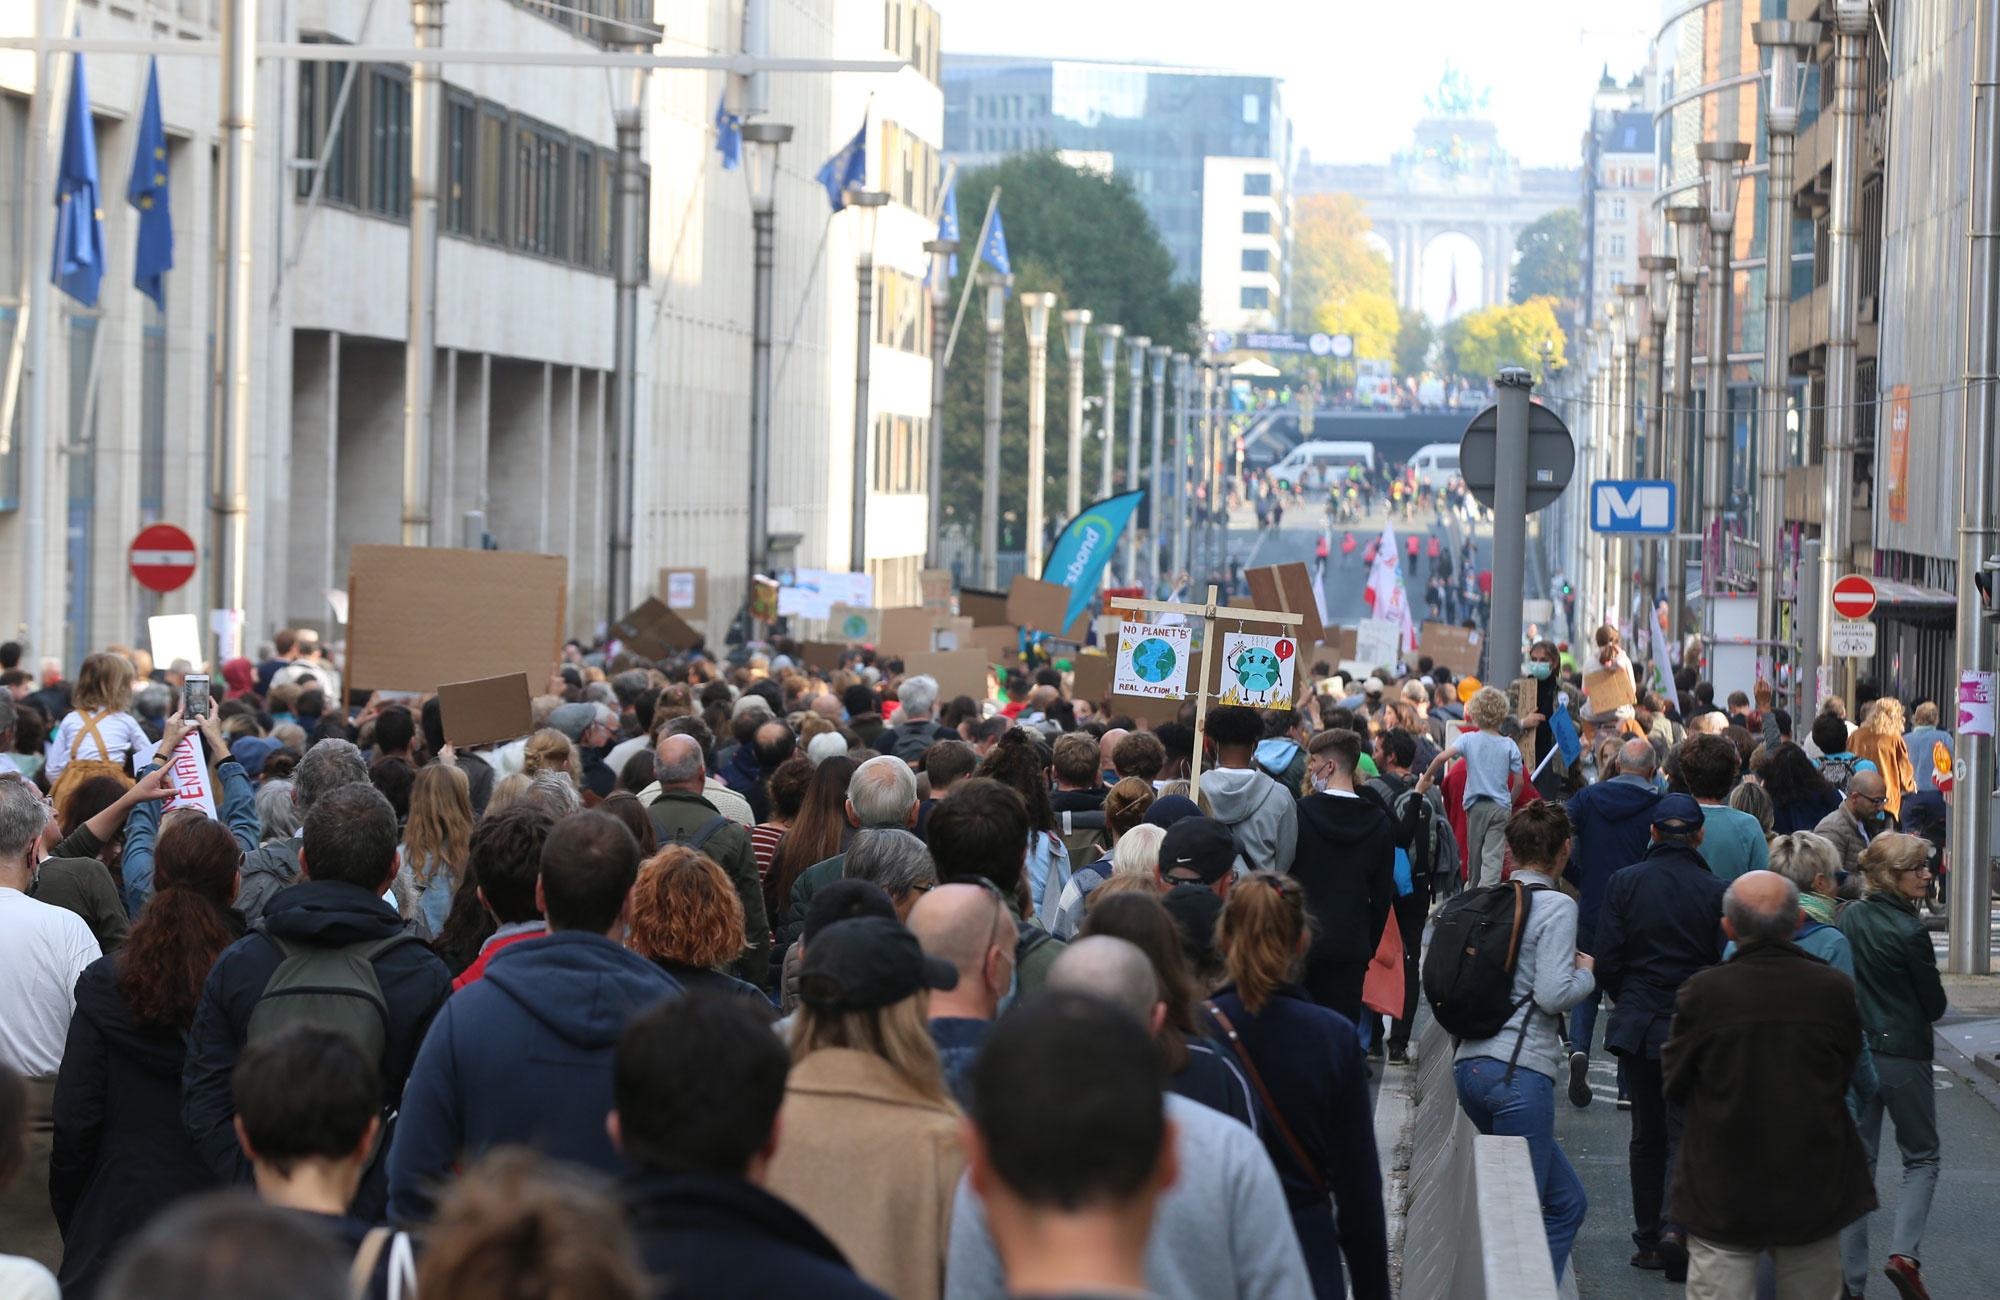 Marche pour le climat: environ 50.000 personnes à Bruxelles selon les organisateurs